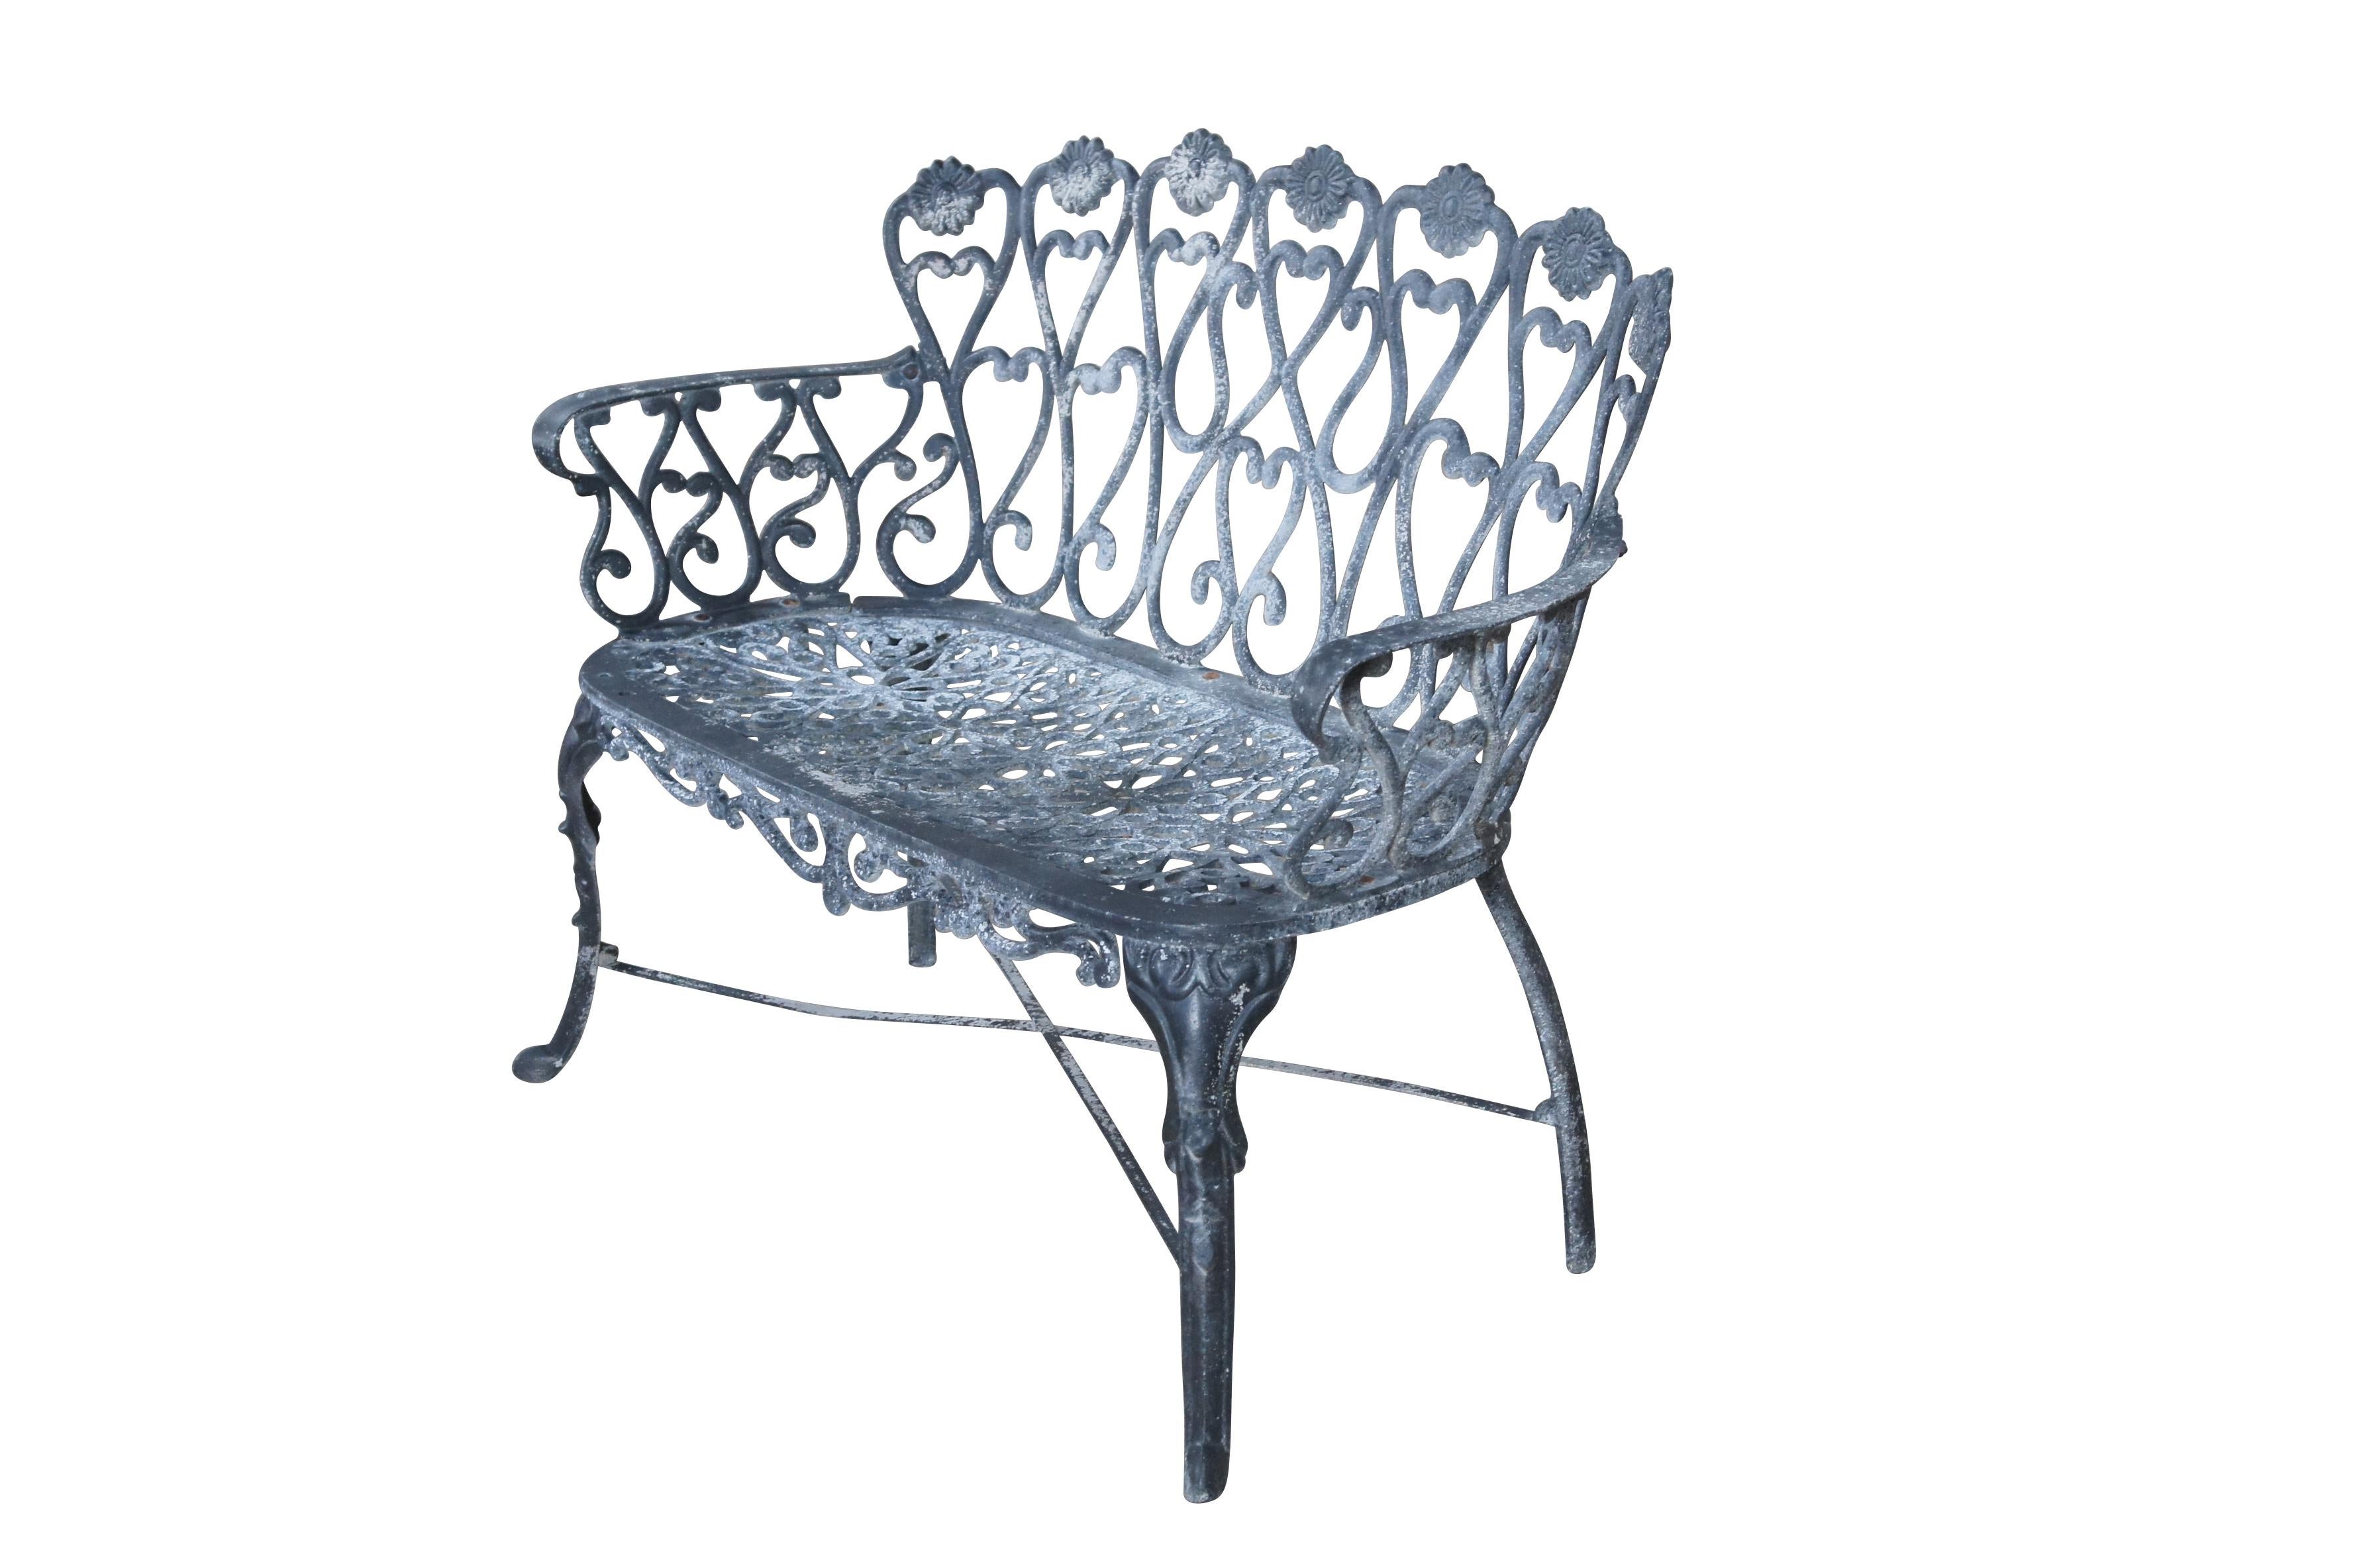 Ein Gartensofa aus Aluminiumguss mit auffälligen Schnörkeln, floralen Medaillons, x-förmiger Streckung und auf vorderen pad-Füßen ruhend.

Abmessungen:
41